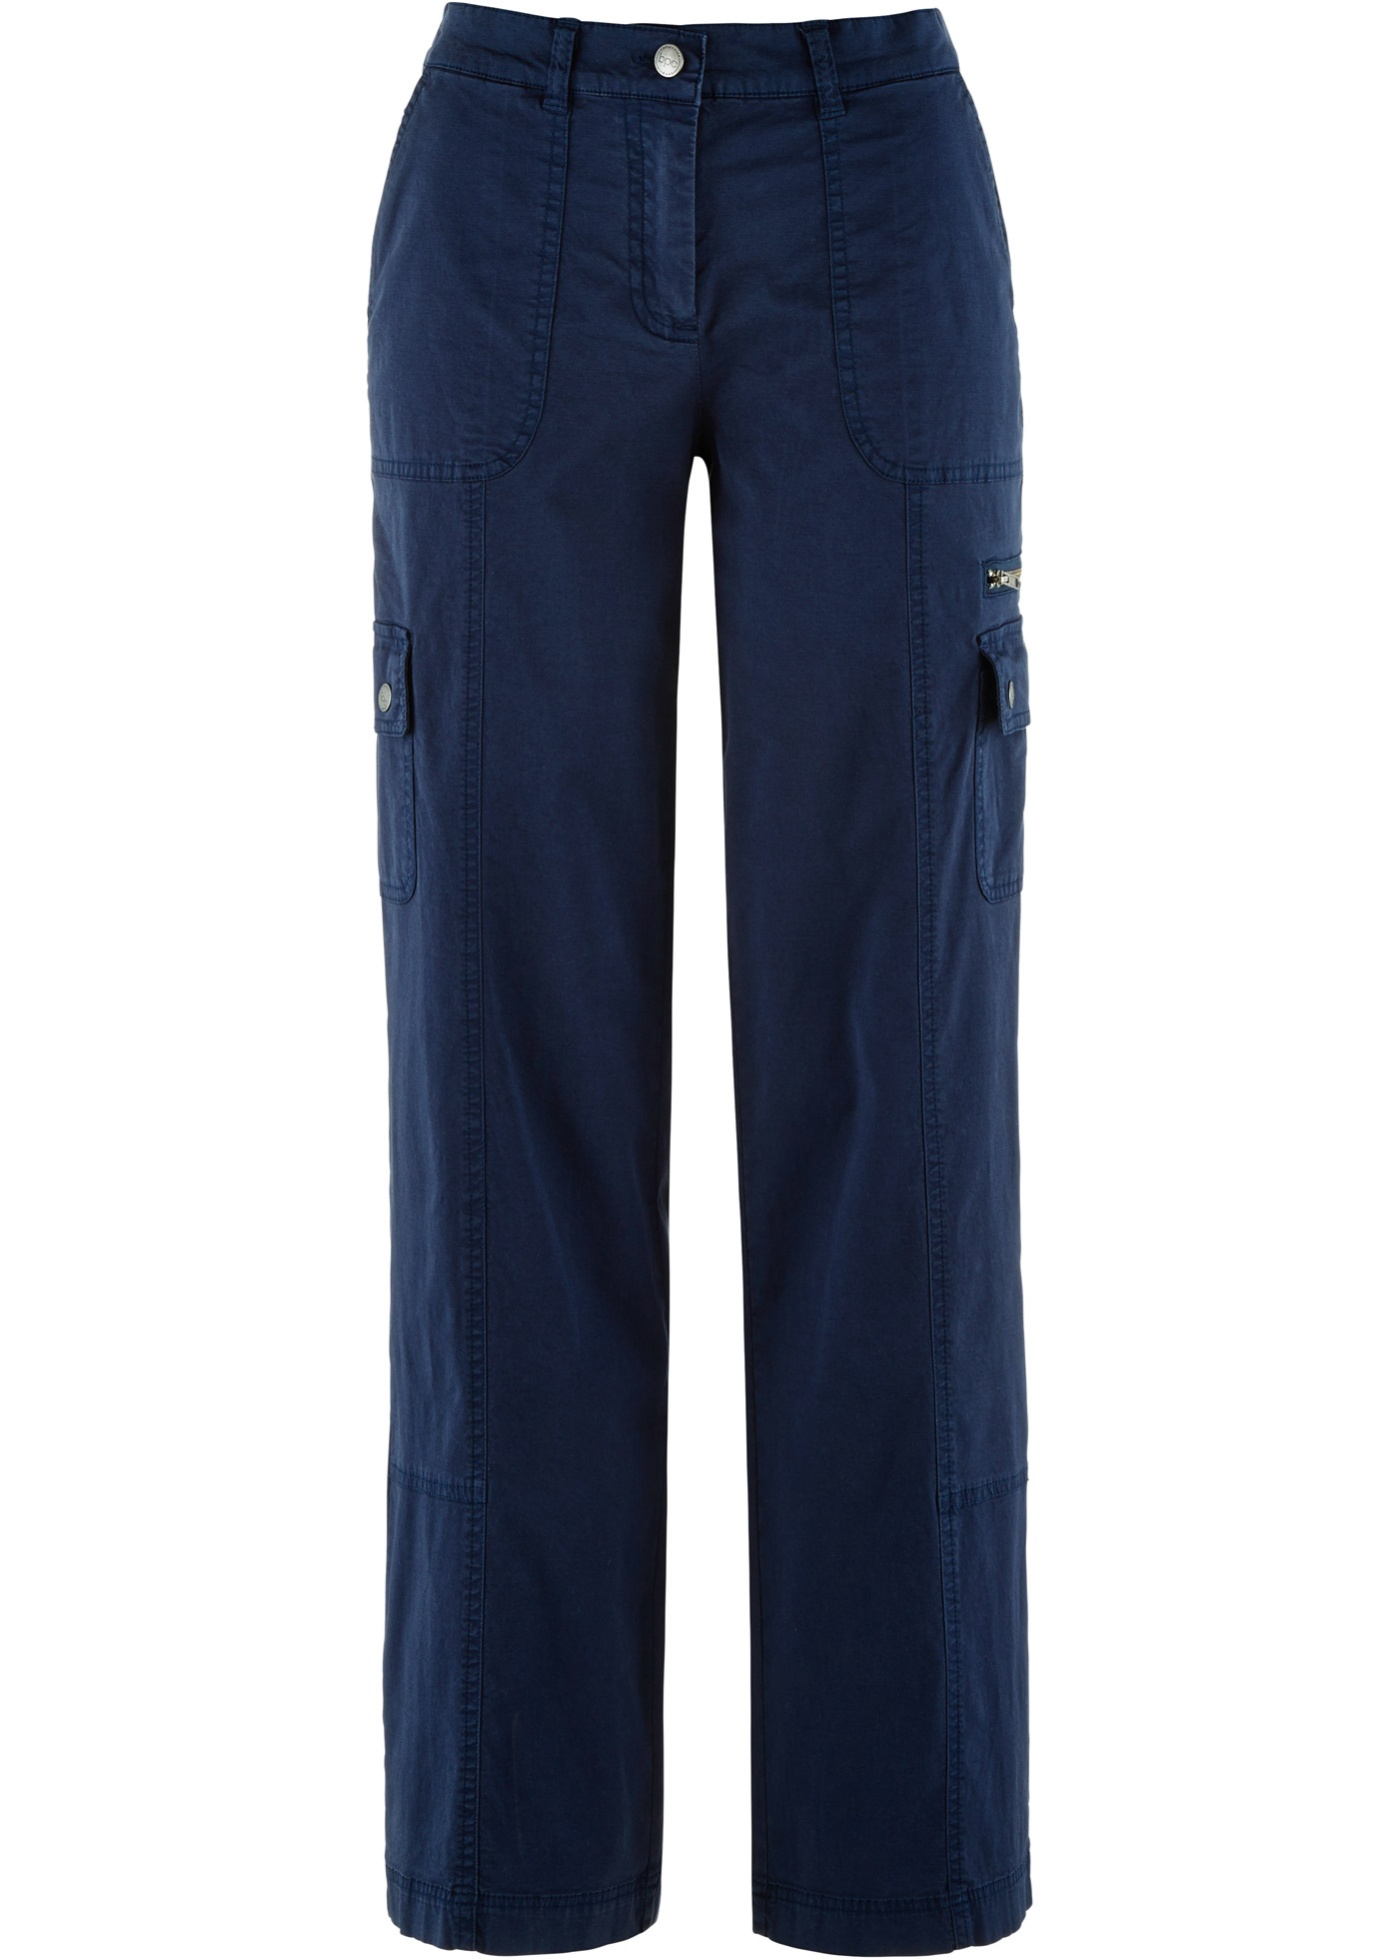 pantalon cargo coton à taille confortable, loose fit